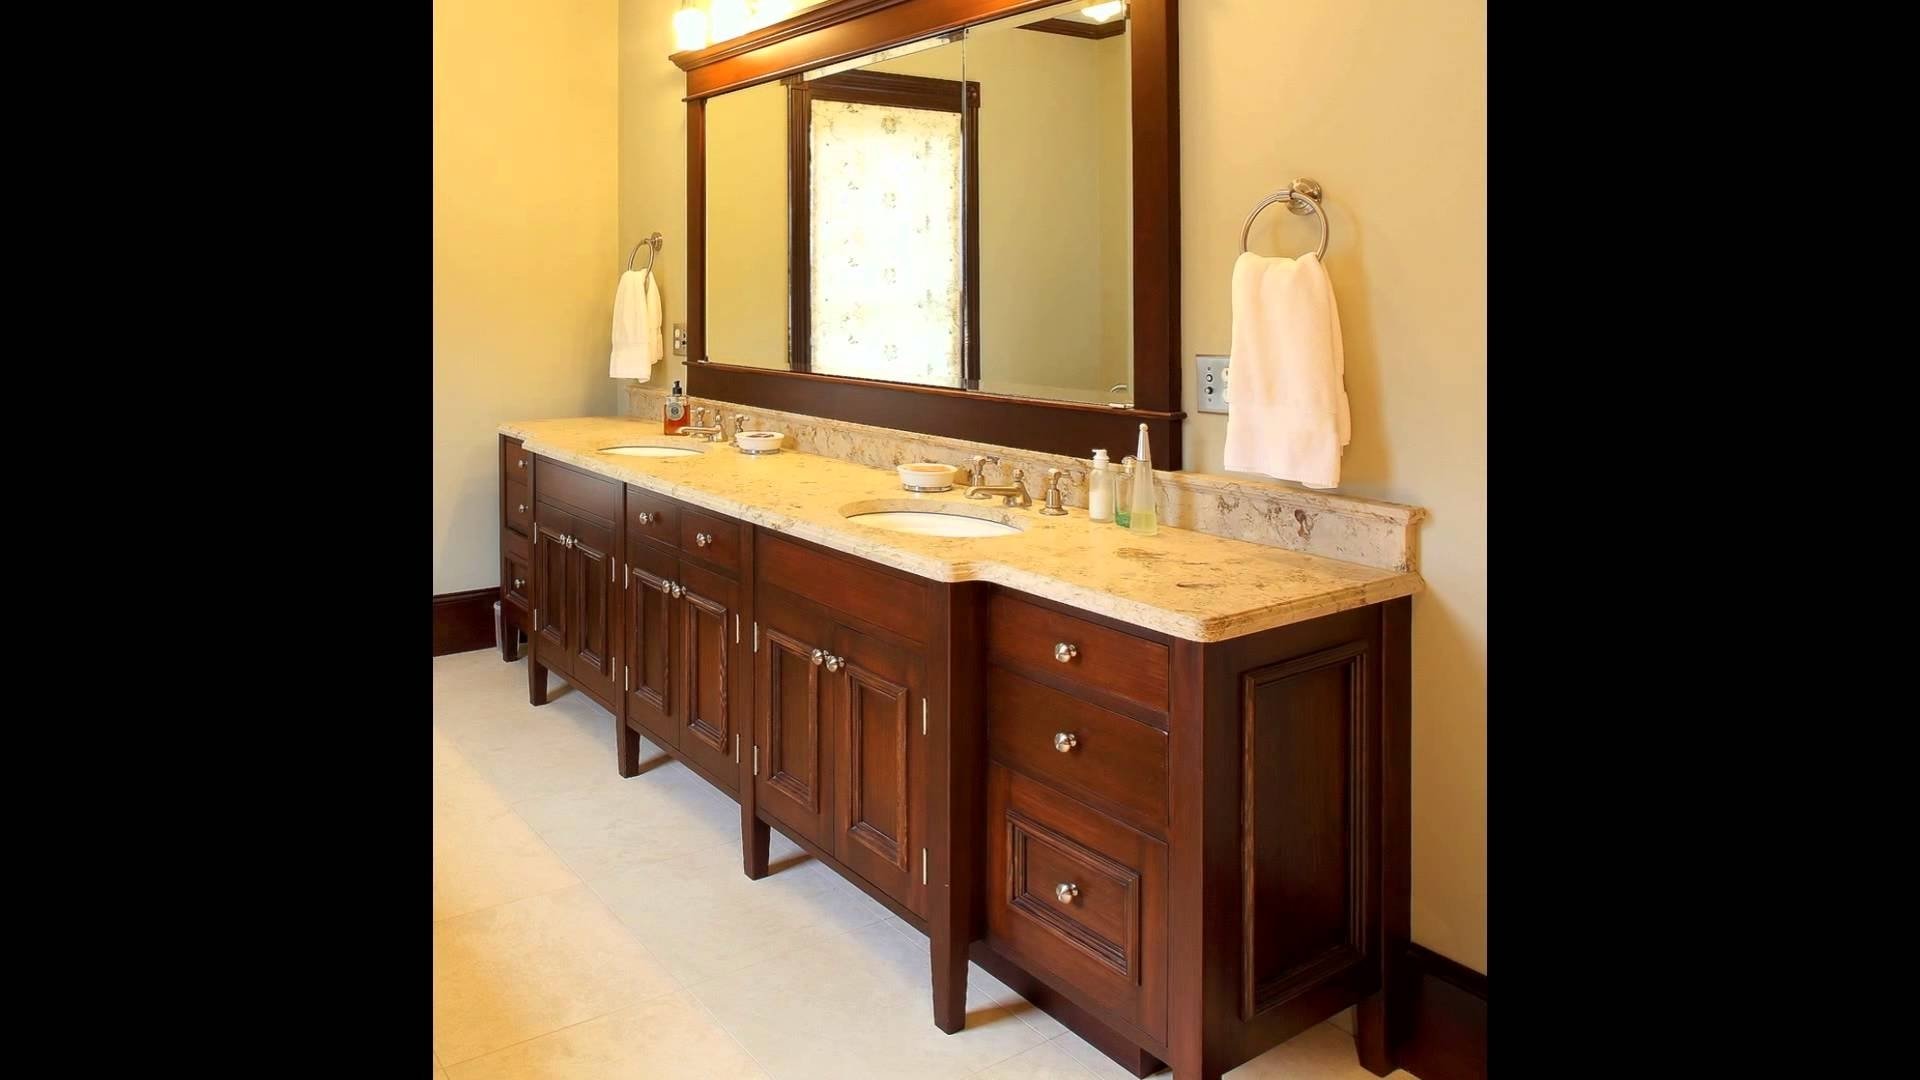 10 Fashionable Double Sink Bathroom Vanity Ideas double sink bathroom vanity bathroom double sink vanity youtube 2022